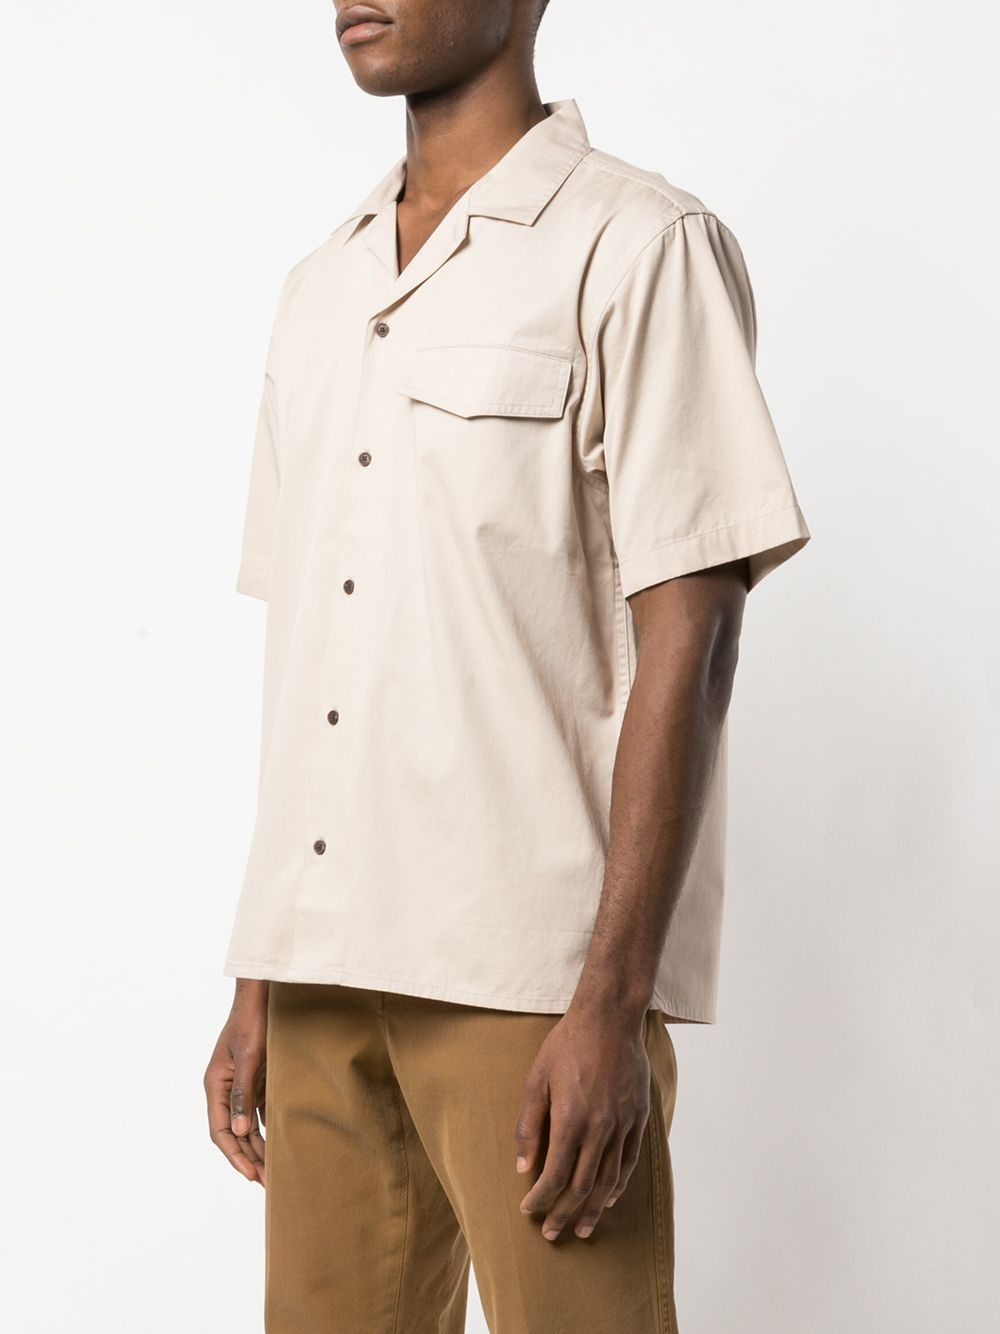 фото Carhartt wip рубашка anvil с короткими рукавами